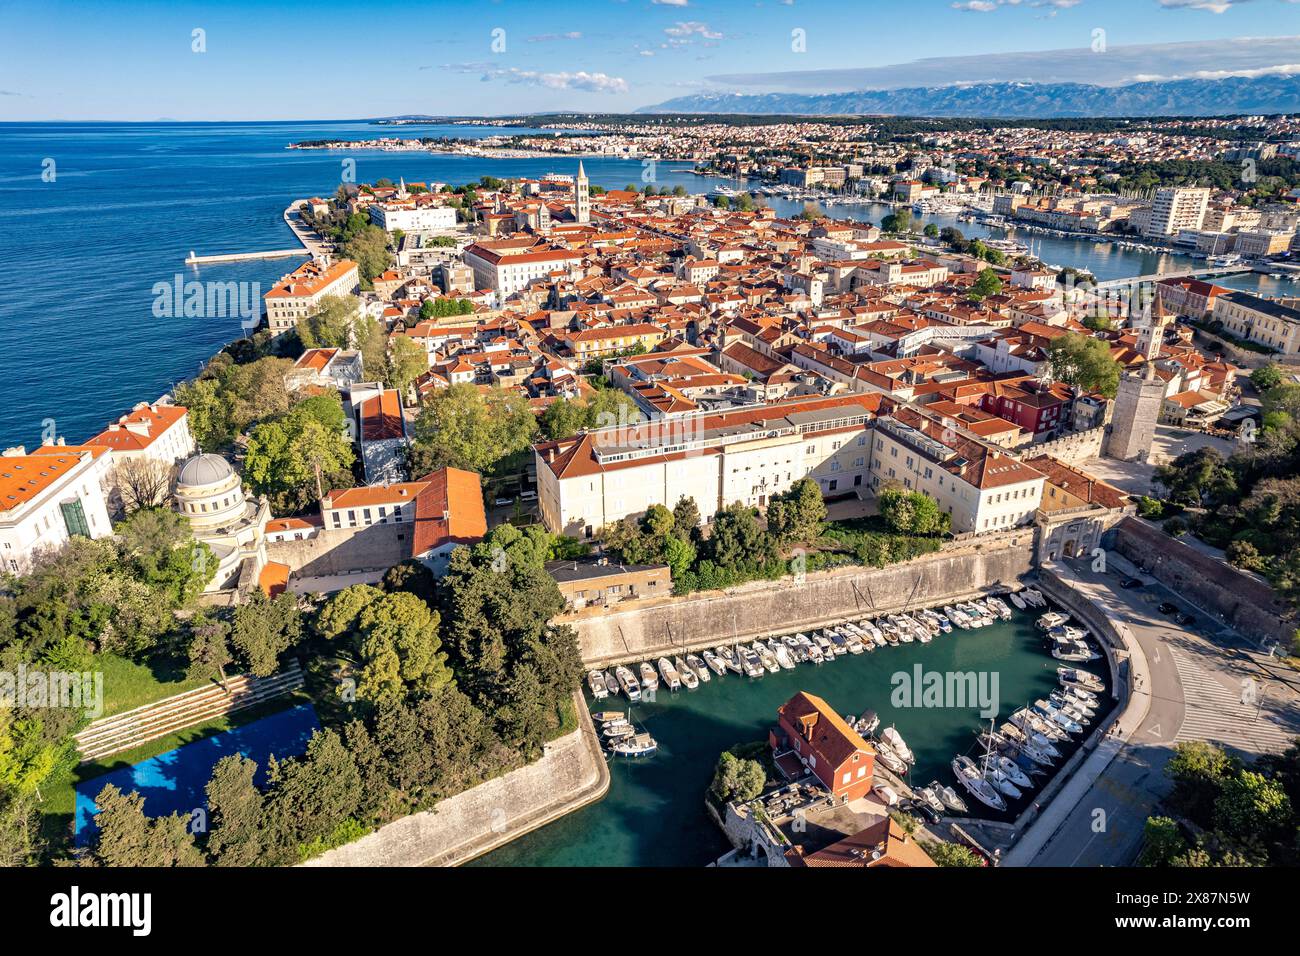 Zadar von oben gesehen, Kroatien, Europe Banque D'Images